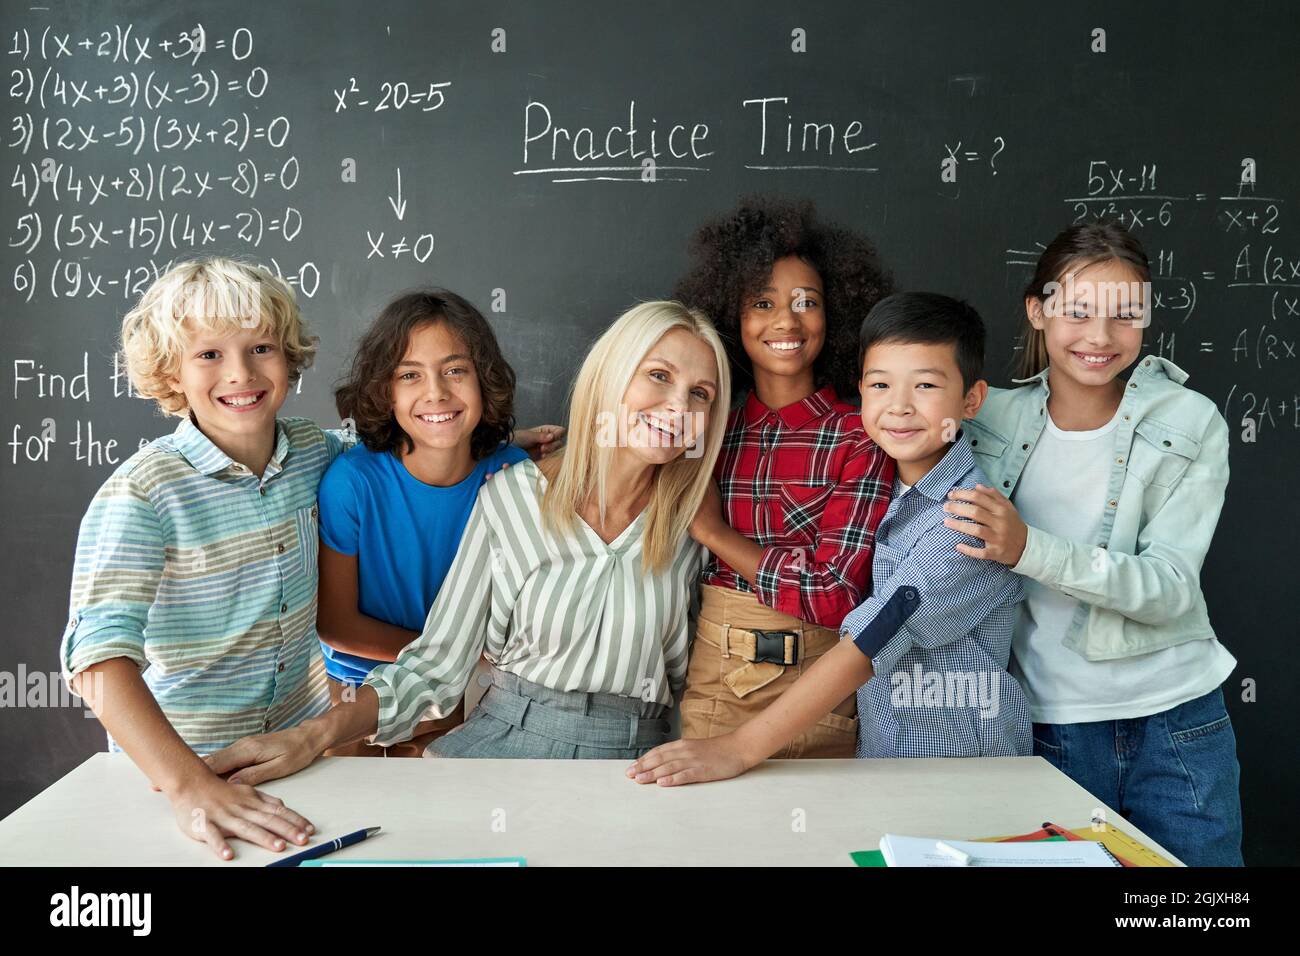 Porträt eines fröhlich lächelnden Lehrers und verschiedener Schüler in der Nähe der Tafel. Stockfoto